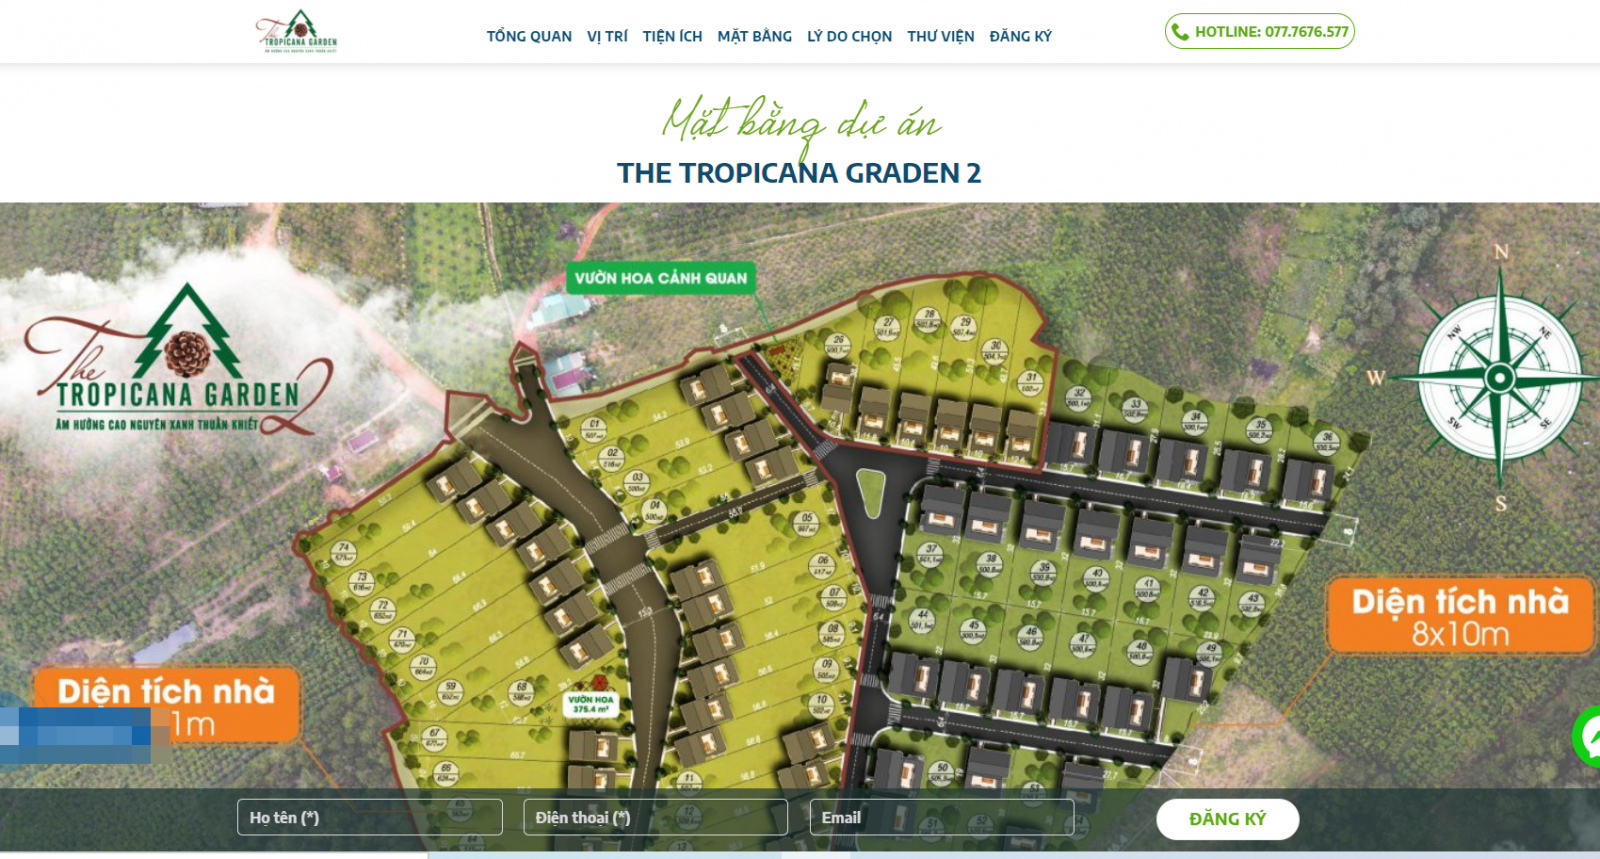 Tropicana Garden là dự án ma vừa bị xử phạt hành chính vì quảng cáo tô vẽ, sai sự thật